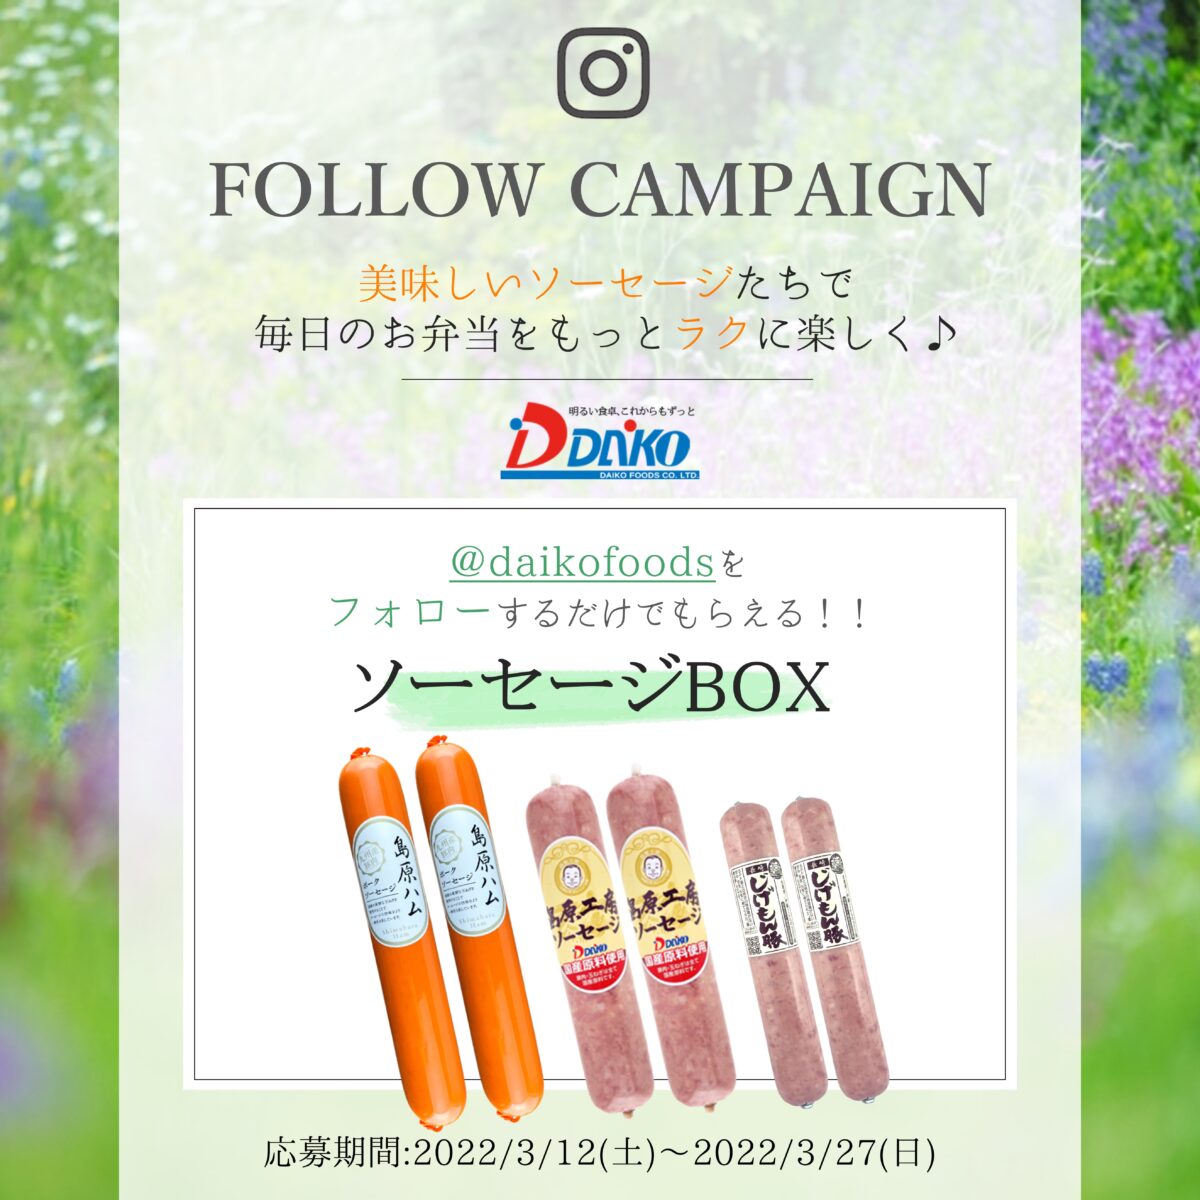 【Instagram】プレゼントキャンペーンのお知らせ